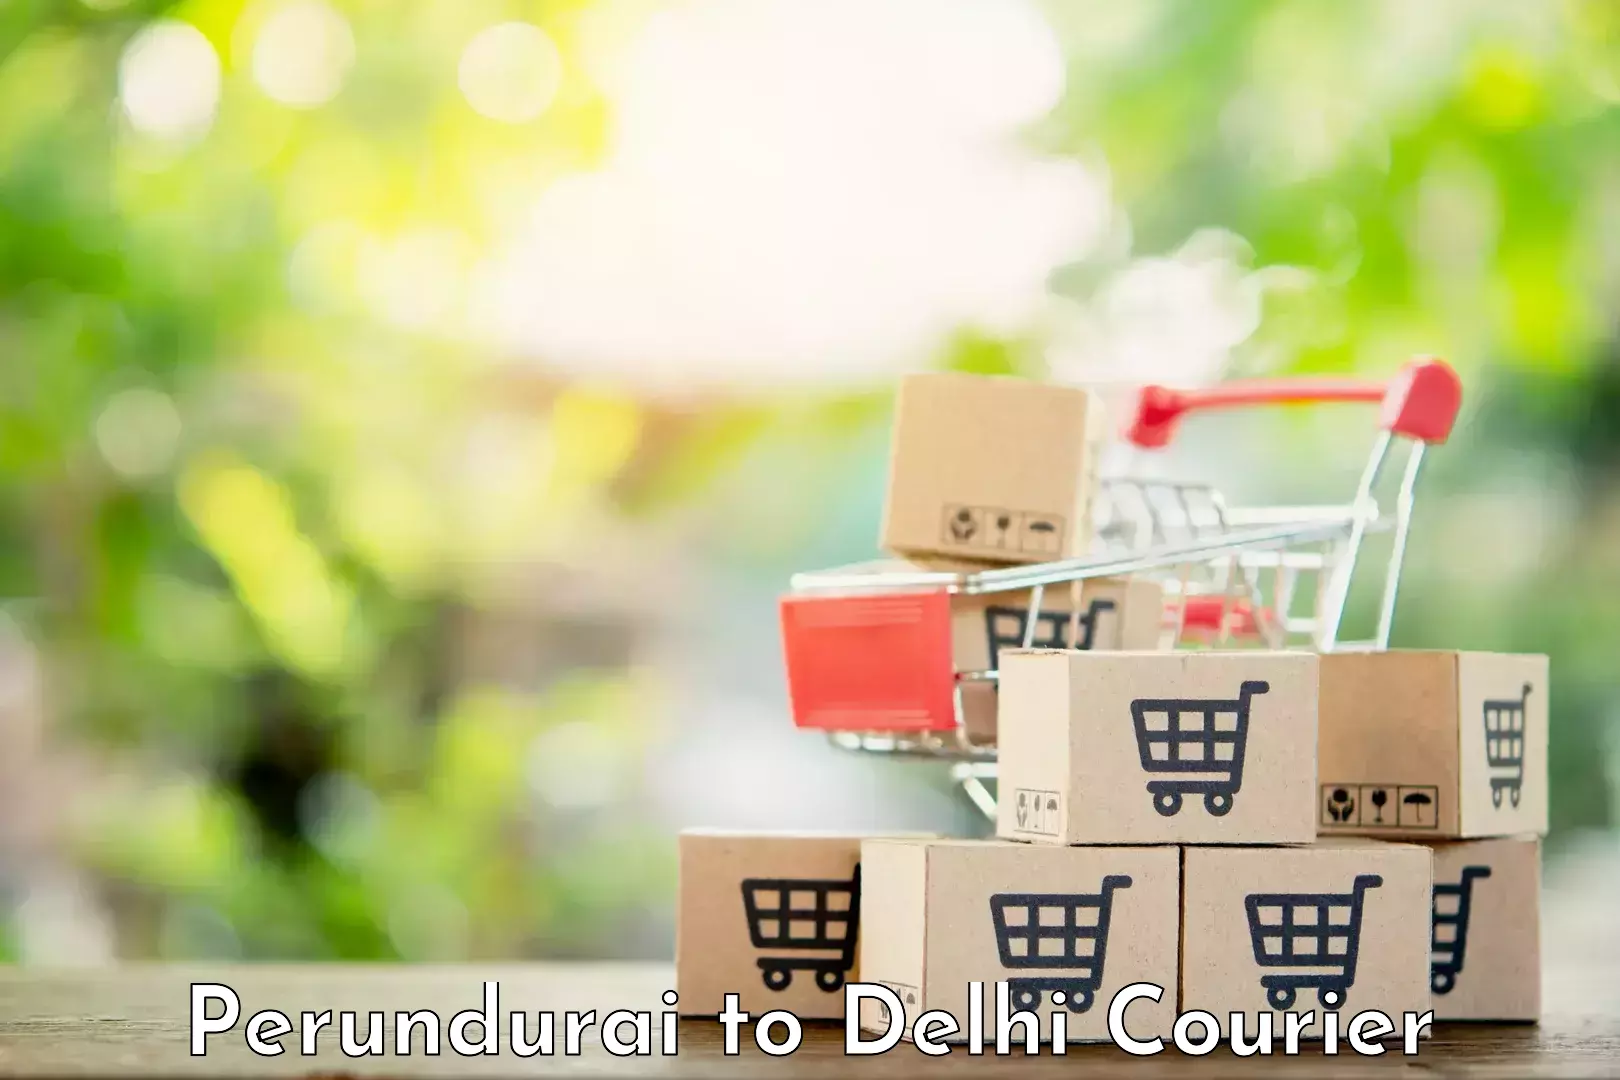 Courier service comparison Perundurai to NIT Delhi